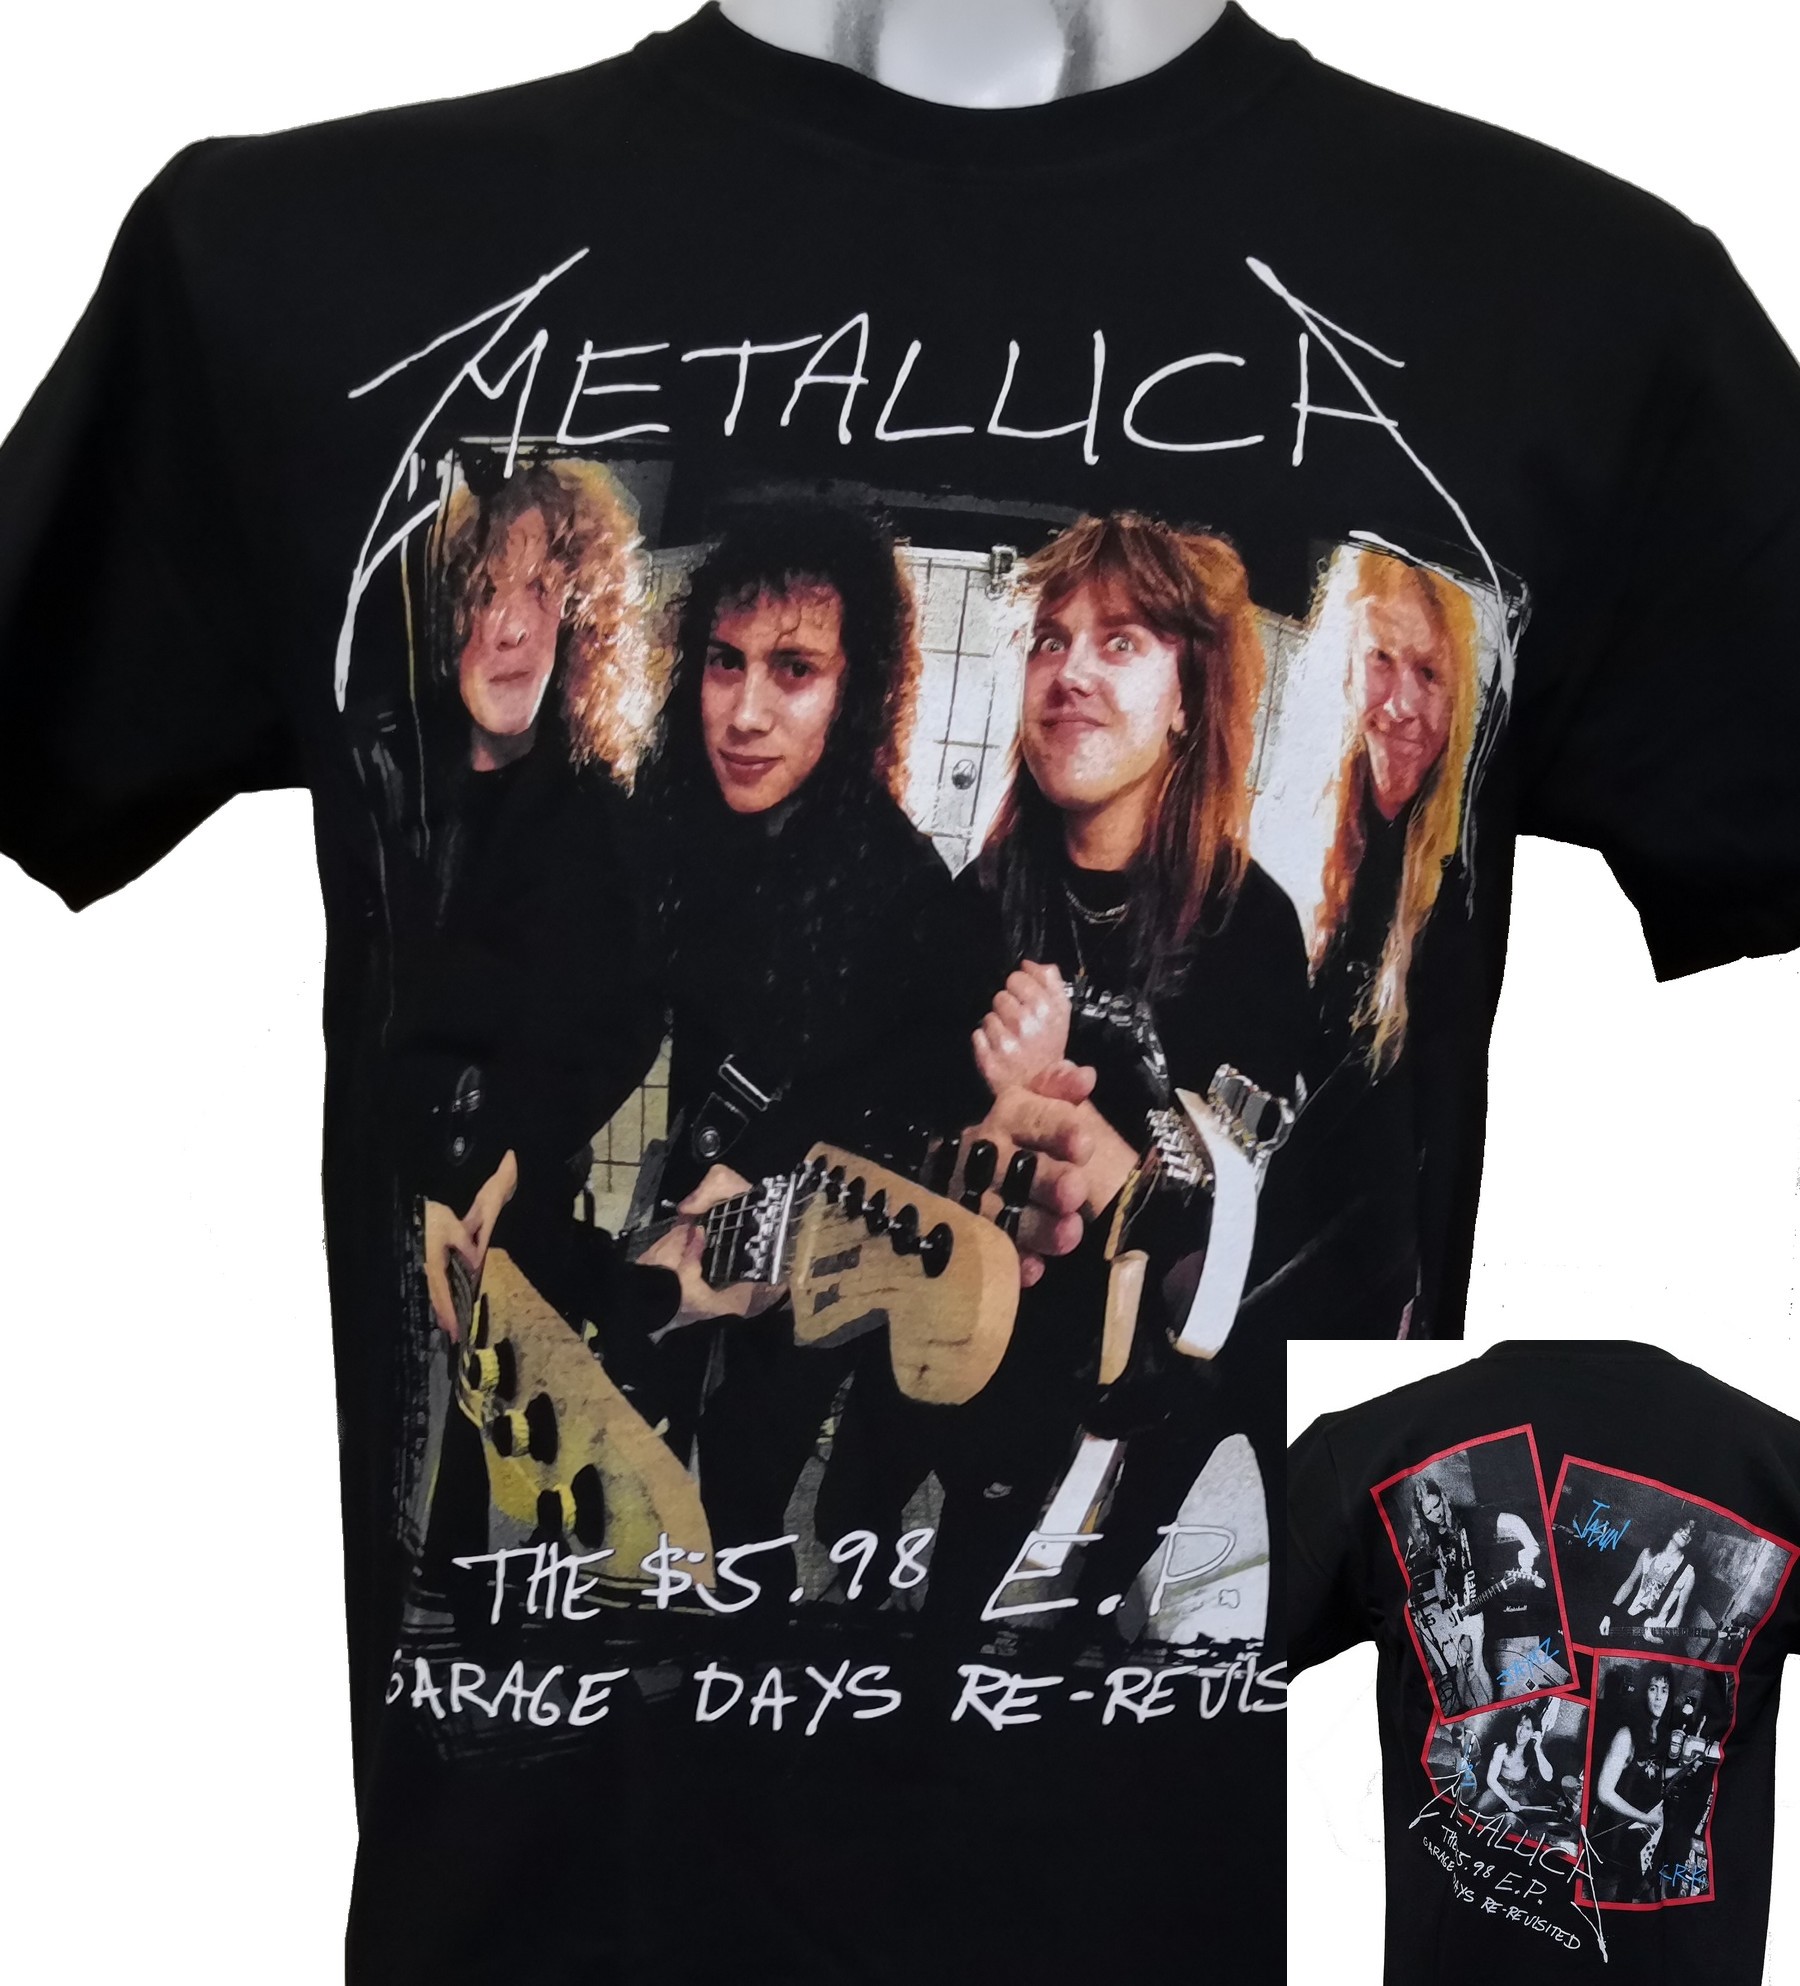 Metallica t-shirt The $5.98 E.P. size L – RoxxBKK